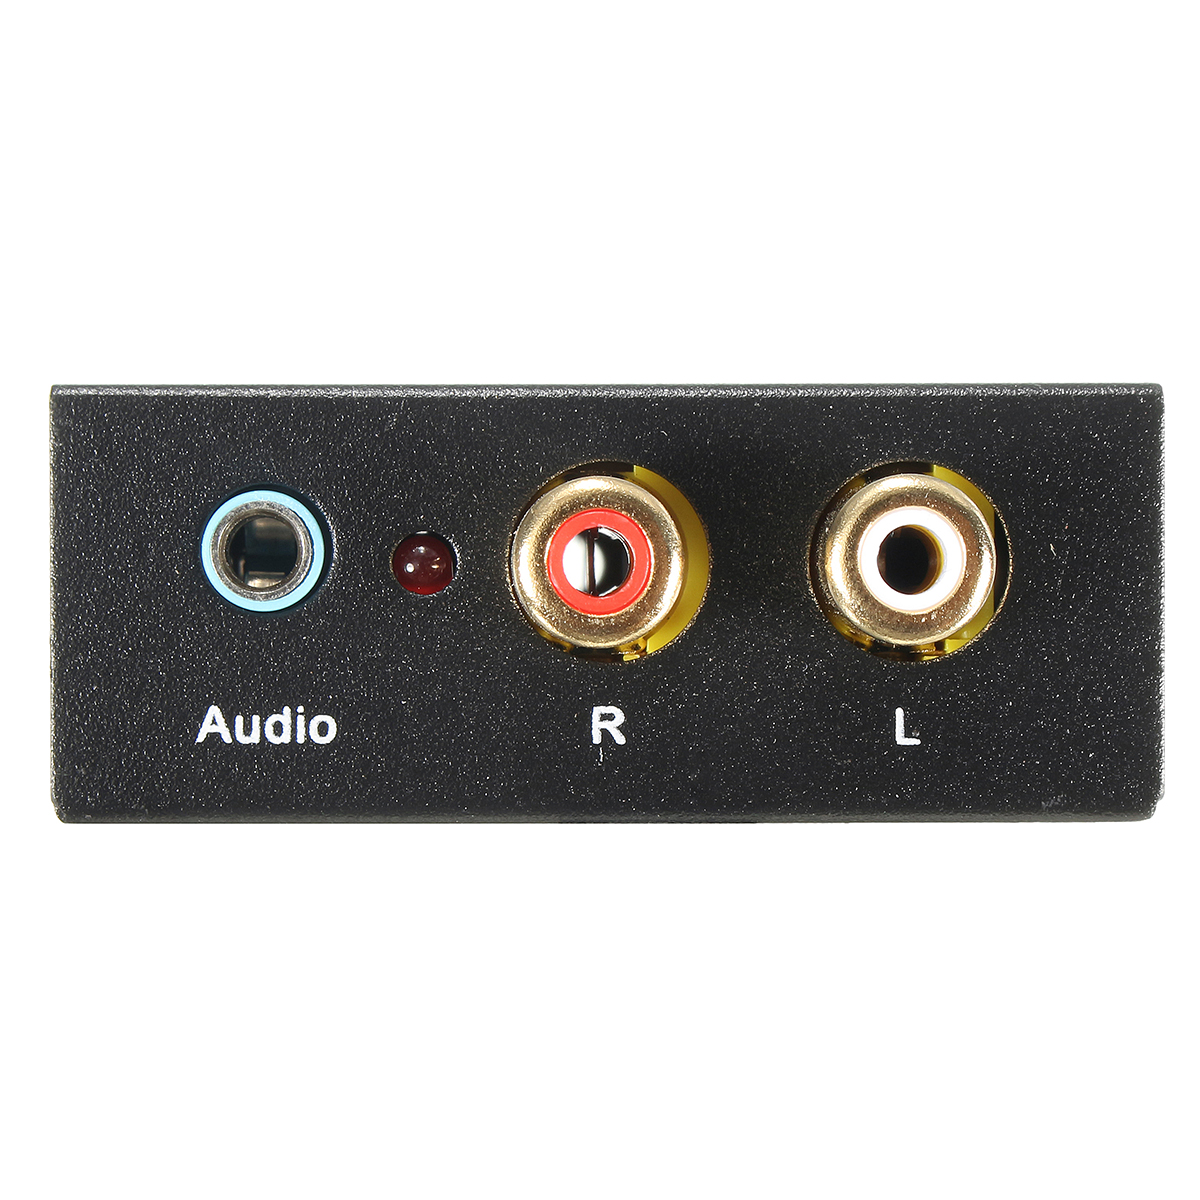 Входы выходы rca. Аудио s/PDIF коаксиальный на телевизоре. Коаксиал аудио SPDIF. RCA (S/PDIF коаксиальный). Кабель Optical Audio out RCA 5.1.